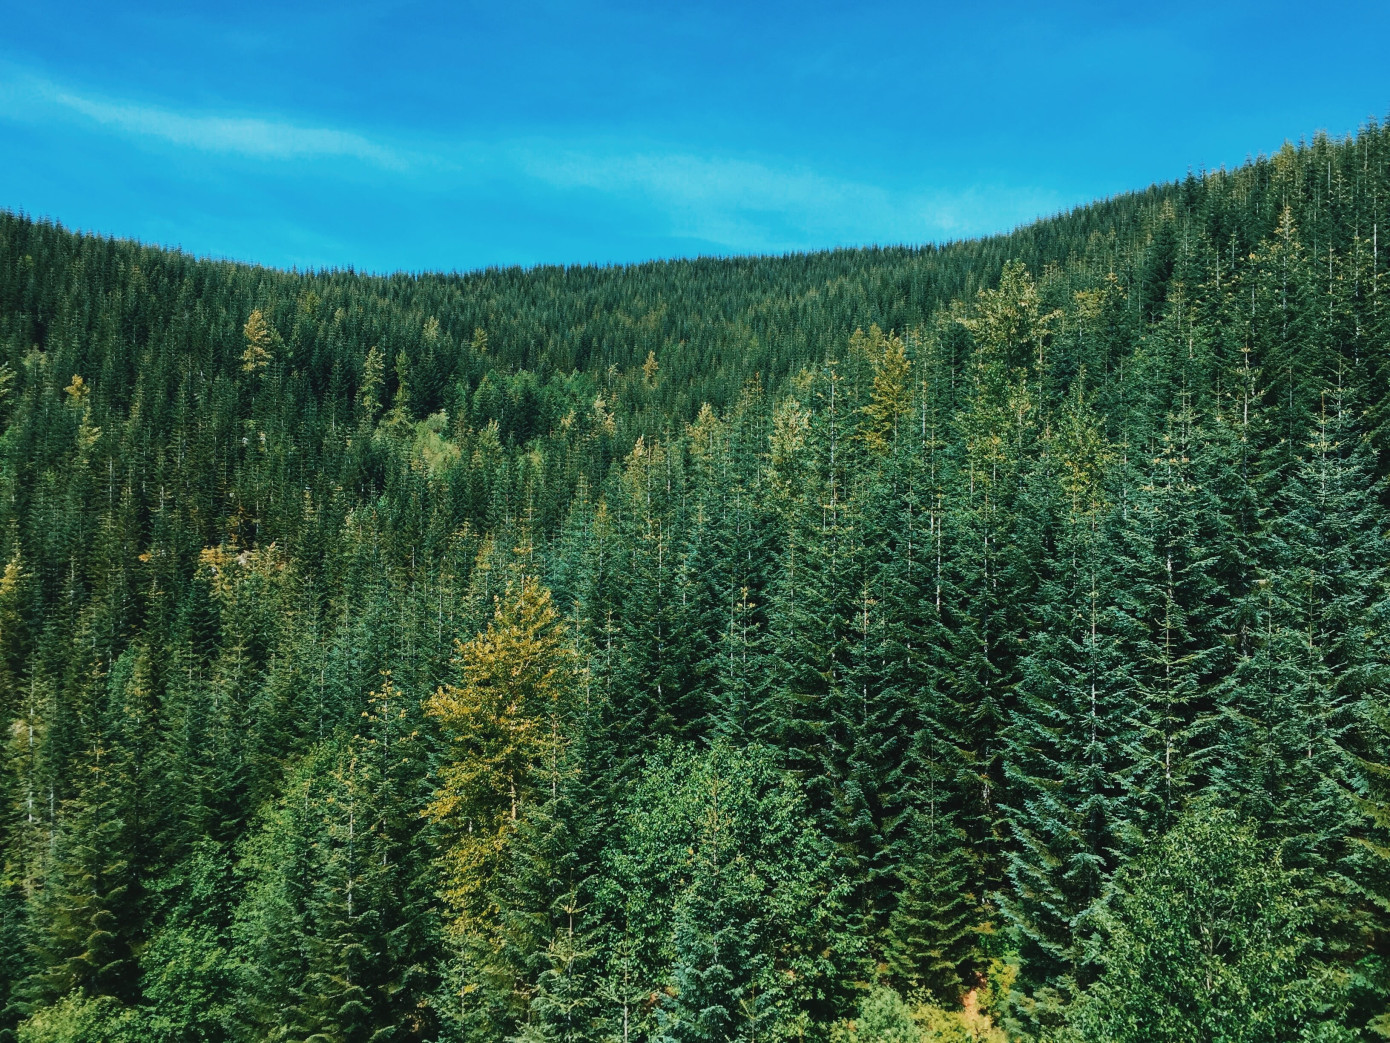 Рослесхоз: в 2023 г. будет готова нормативно-правовая база для реализации лесных климатических проектов